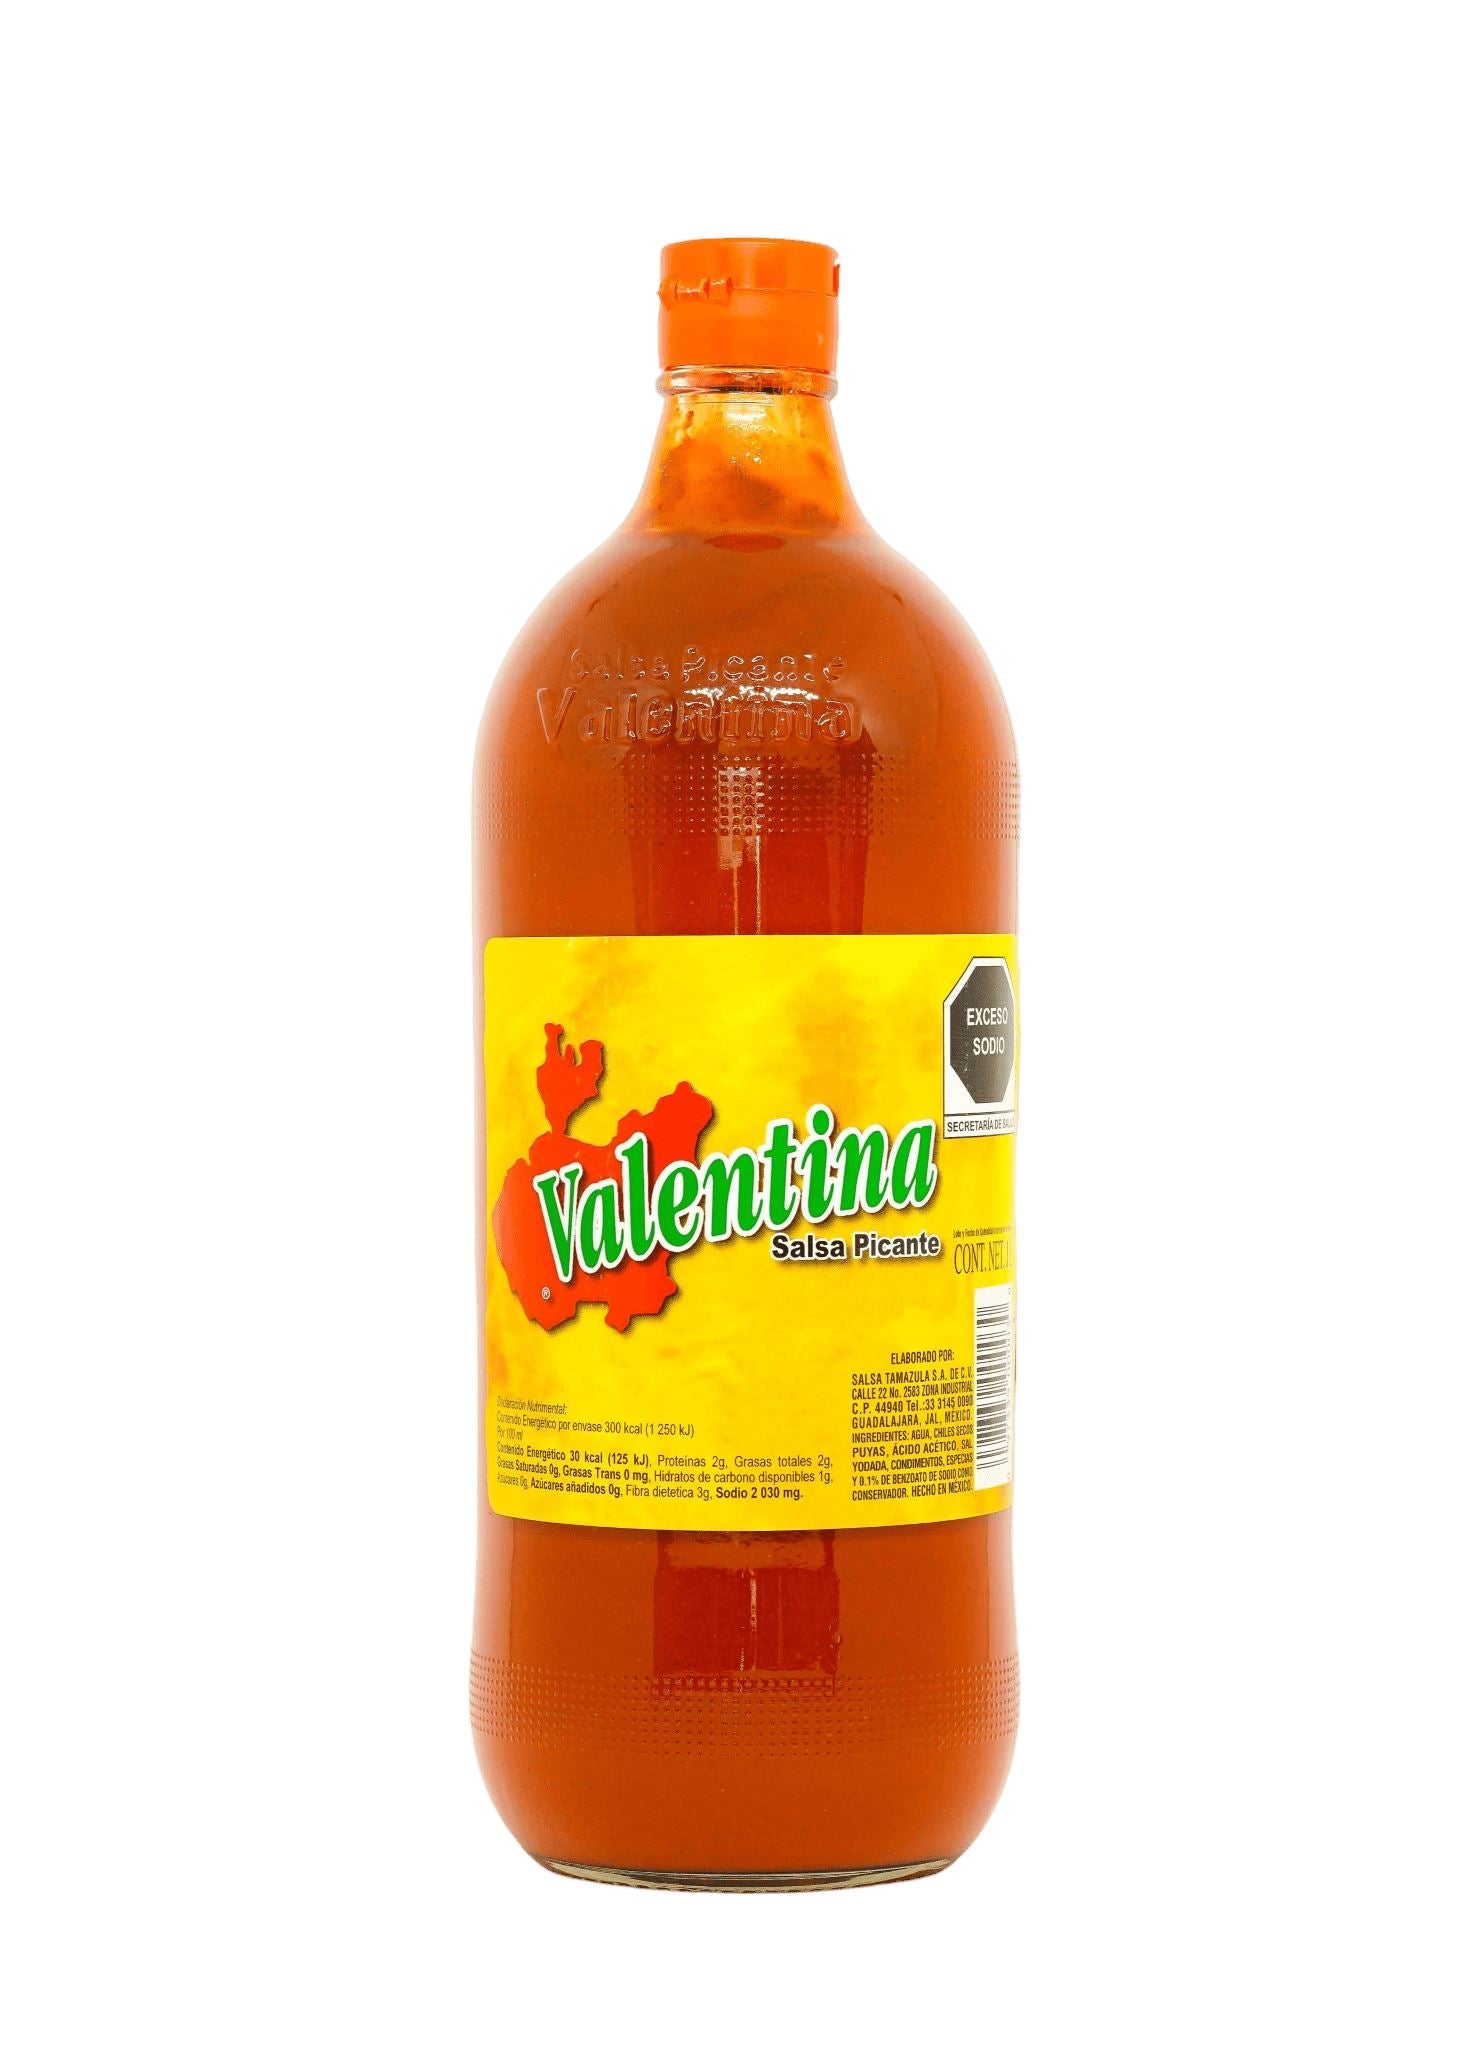 Valentina Hot Sauce - Yellow Label 150ml / 370ml / 1L Sauces Tamazula Group 1L 